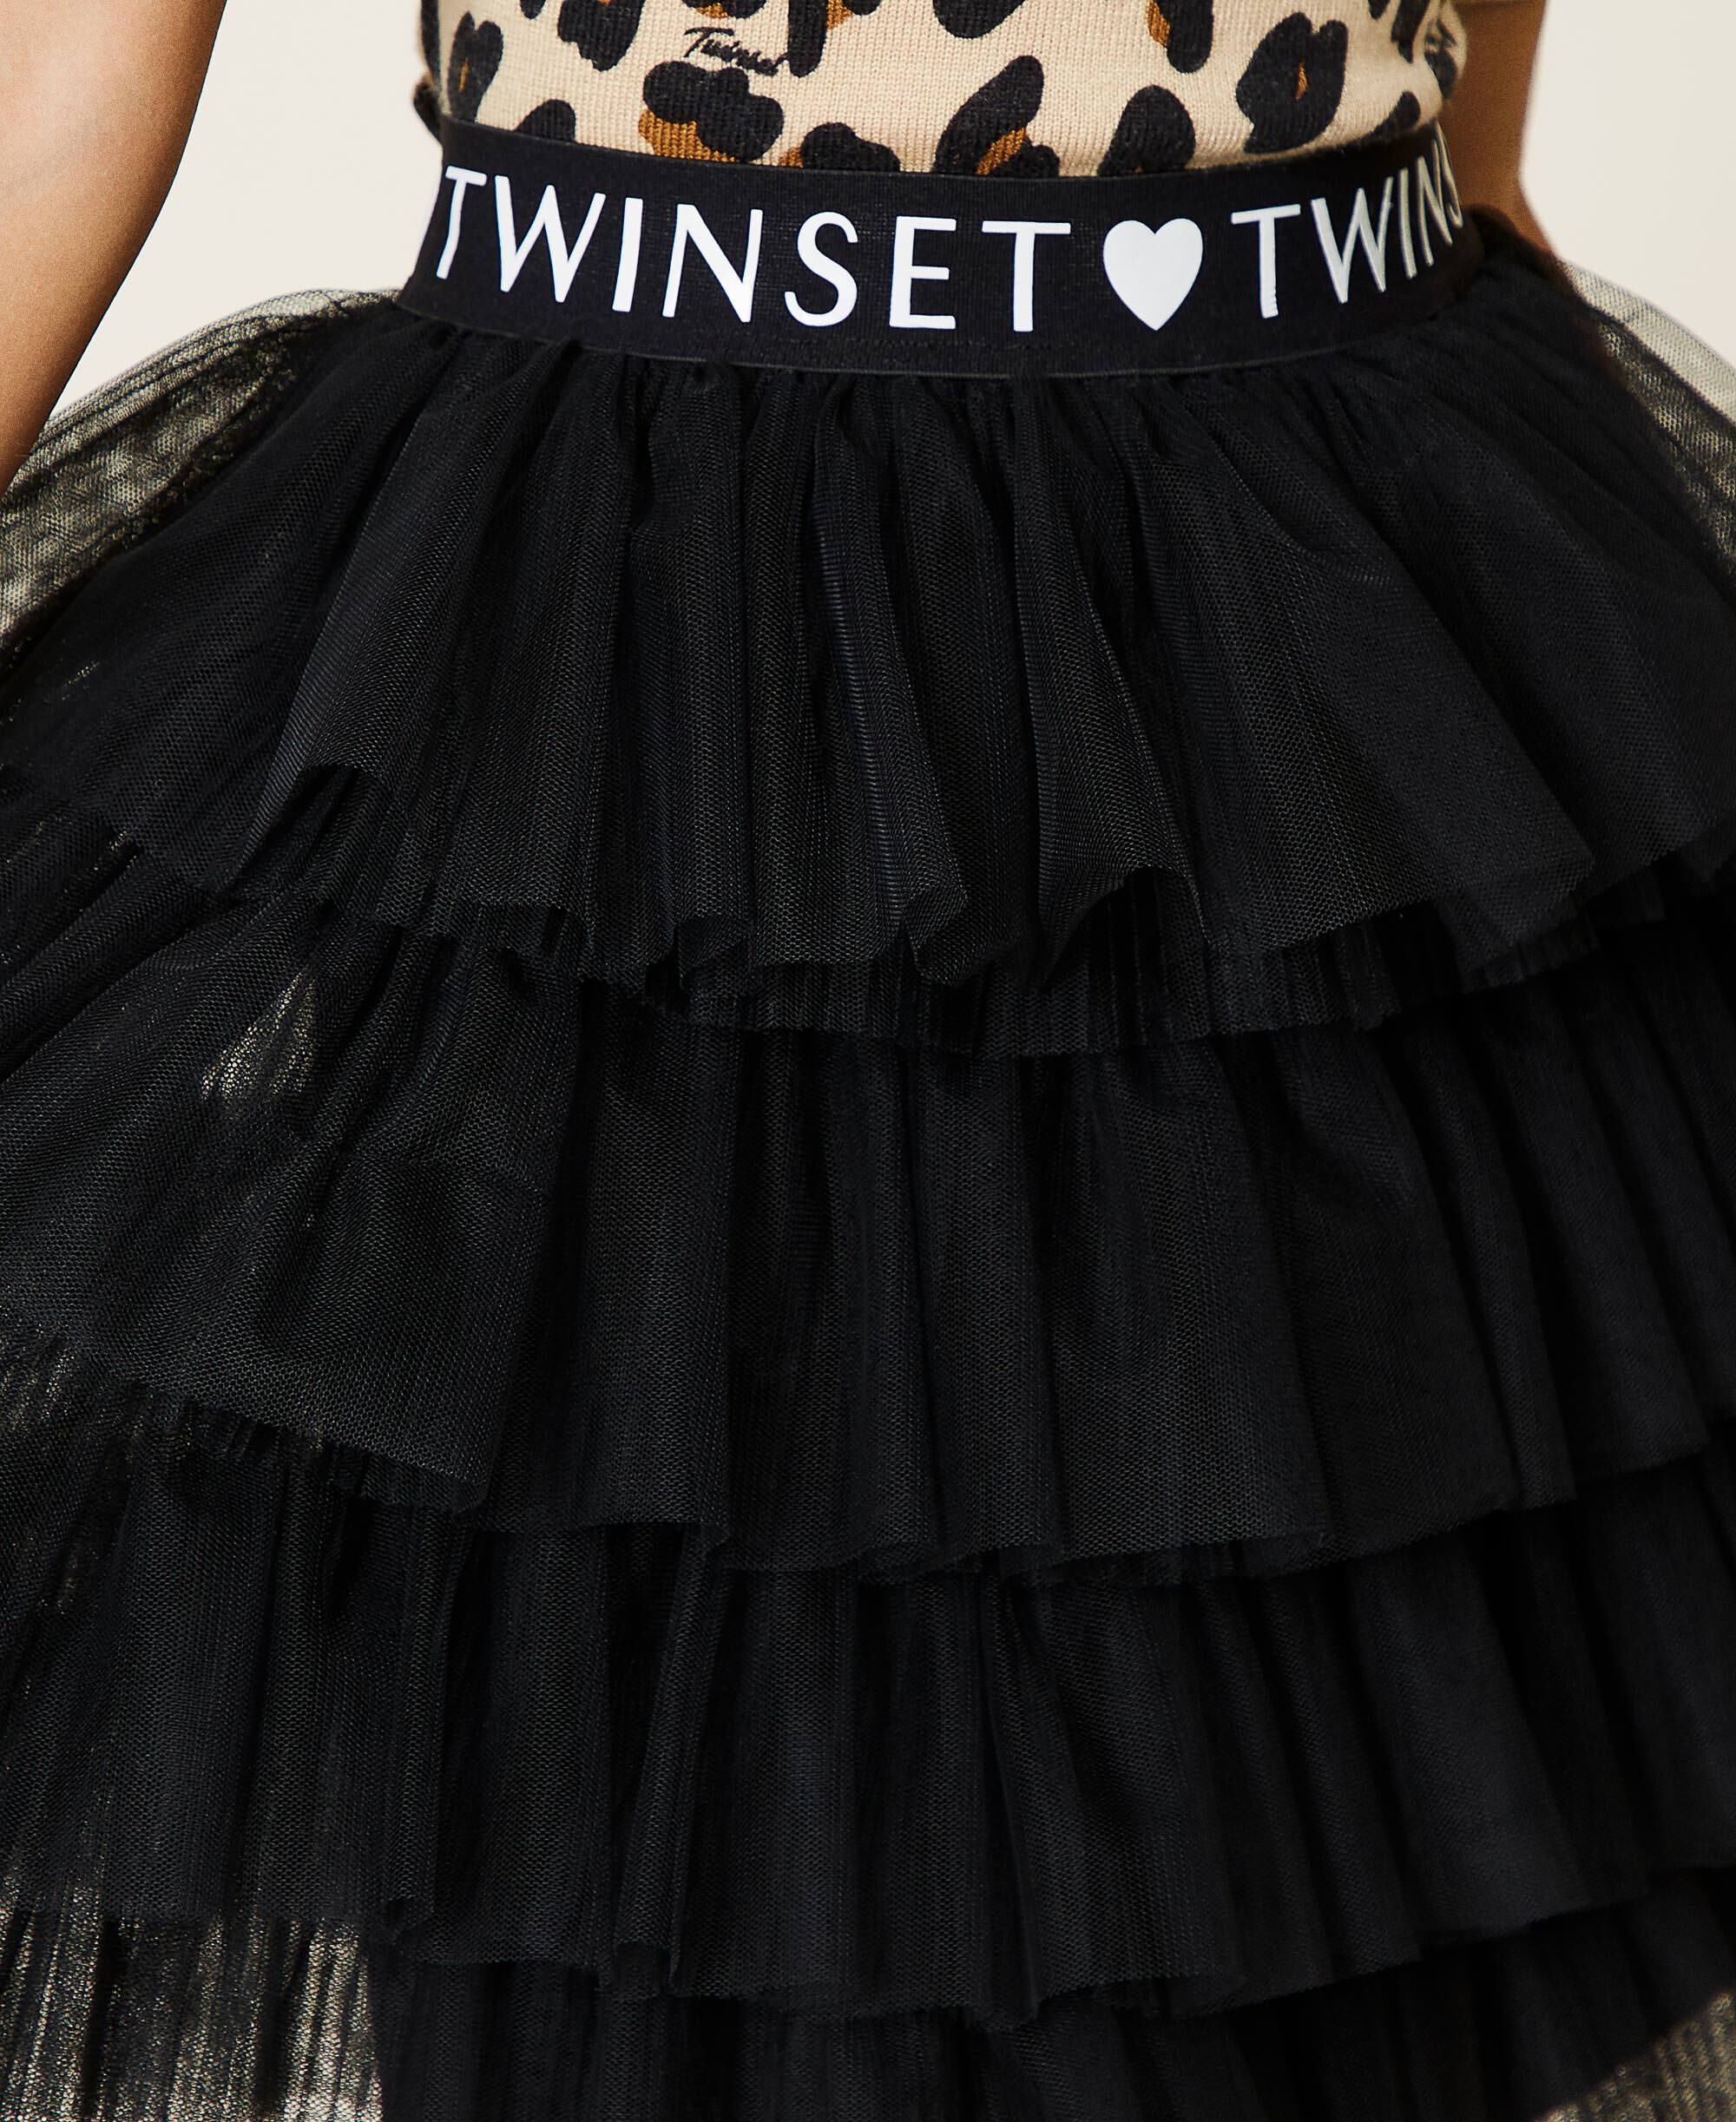 black tulle skirt girl